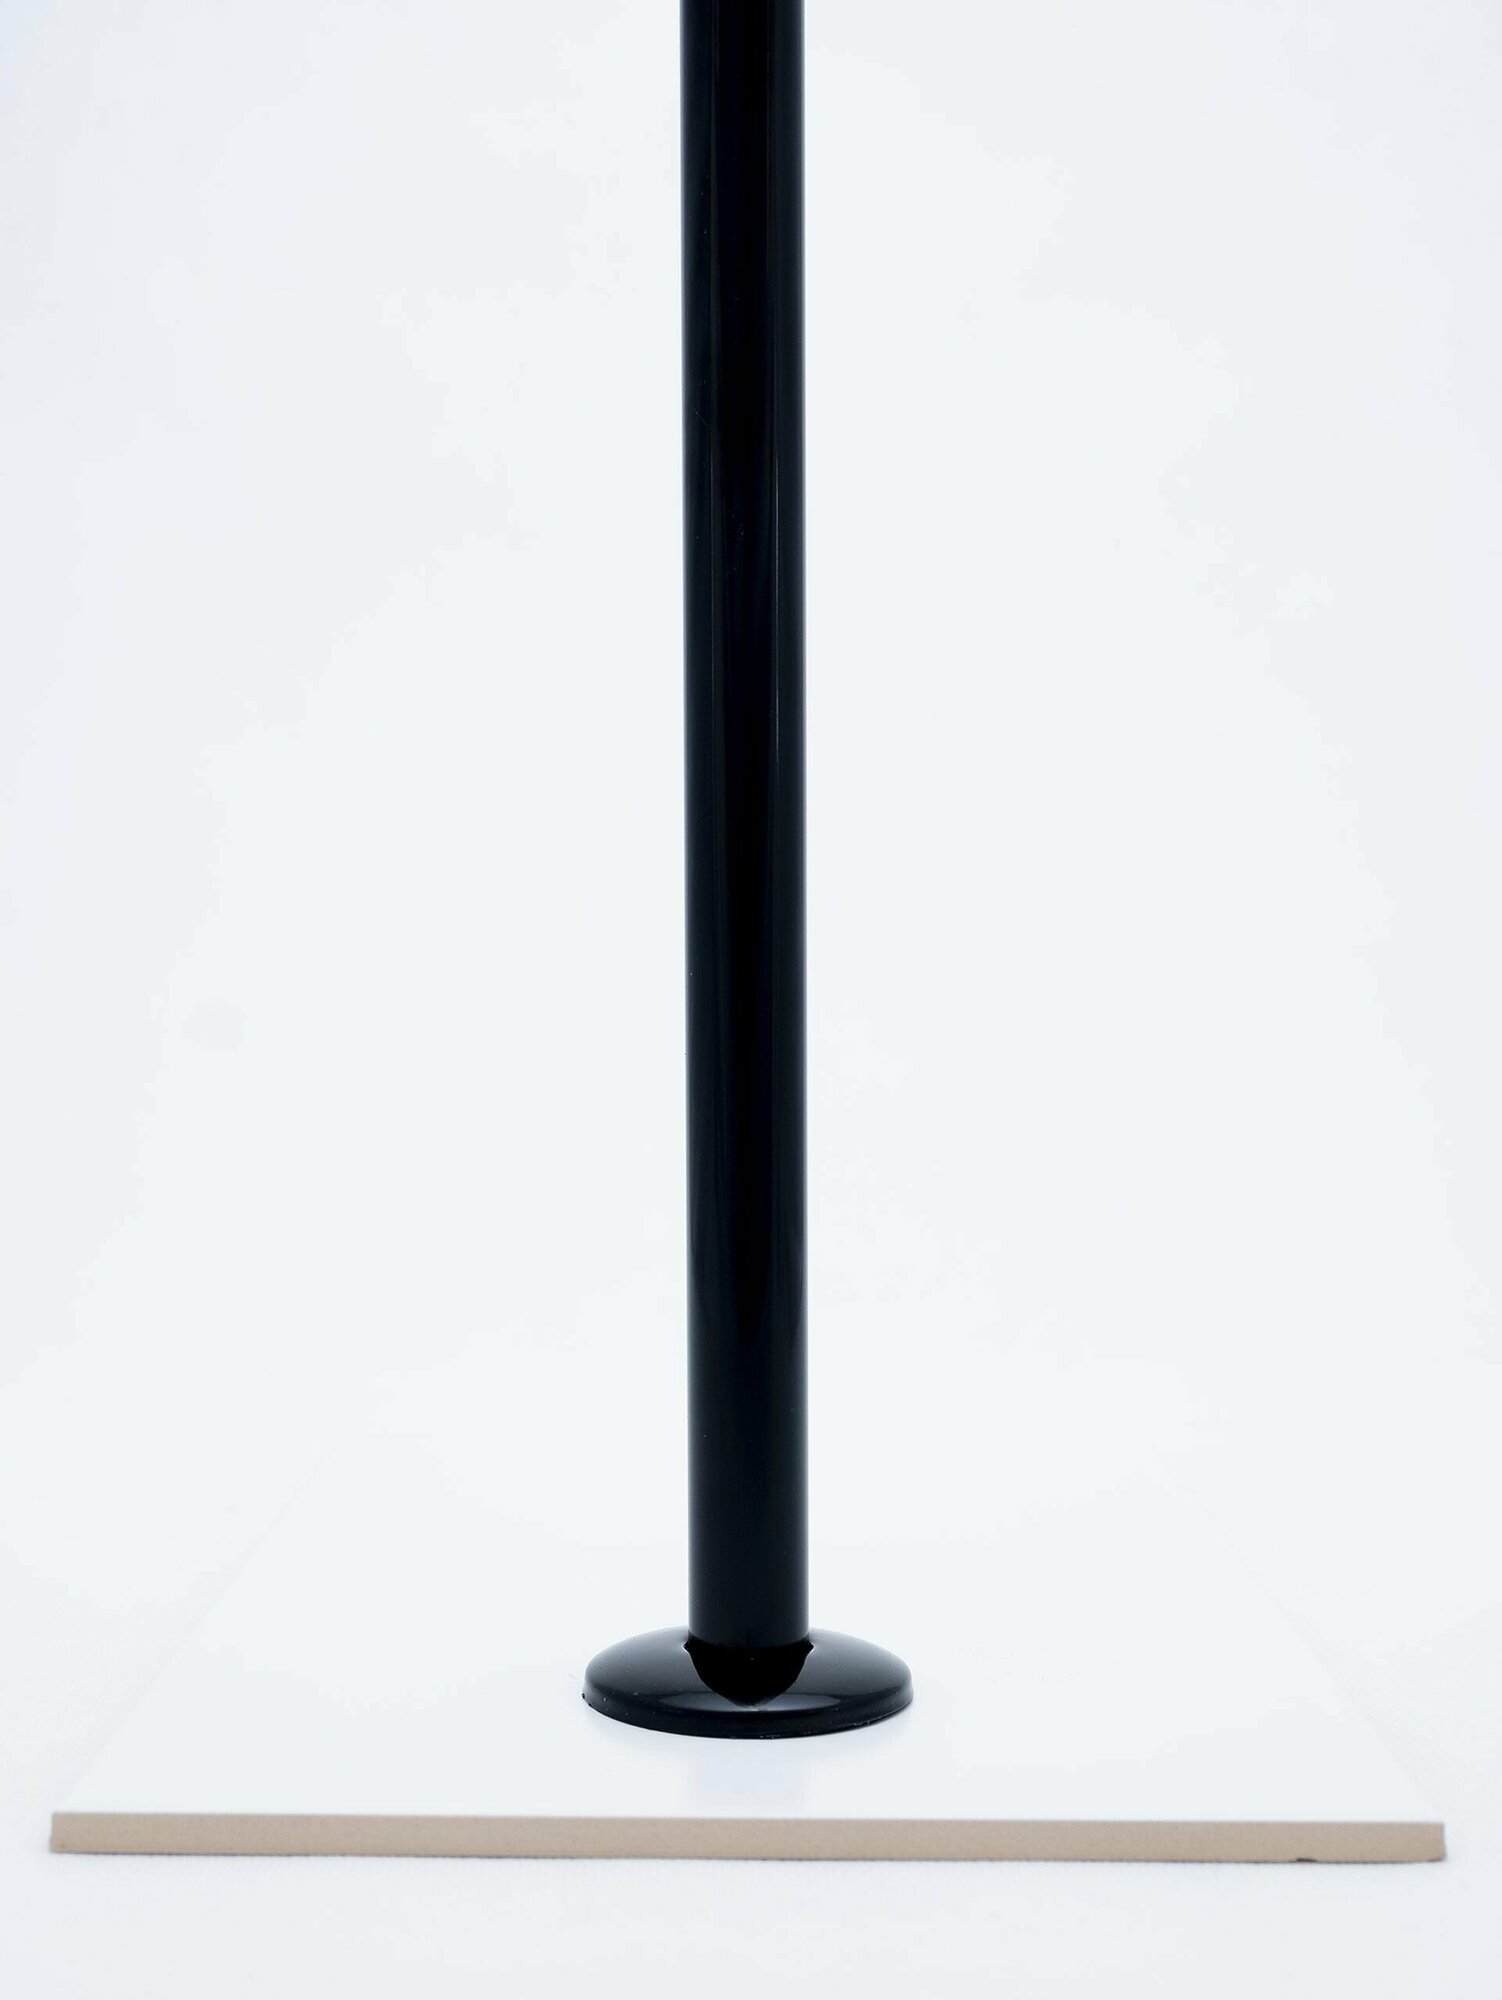 Карниз для ванной 180см (Штанга 20мм) Прямой Усиленный, крепление 6см, цельнометаллический из нержавейки черного цвета